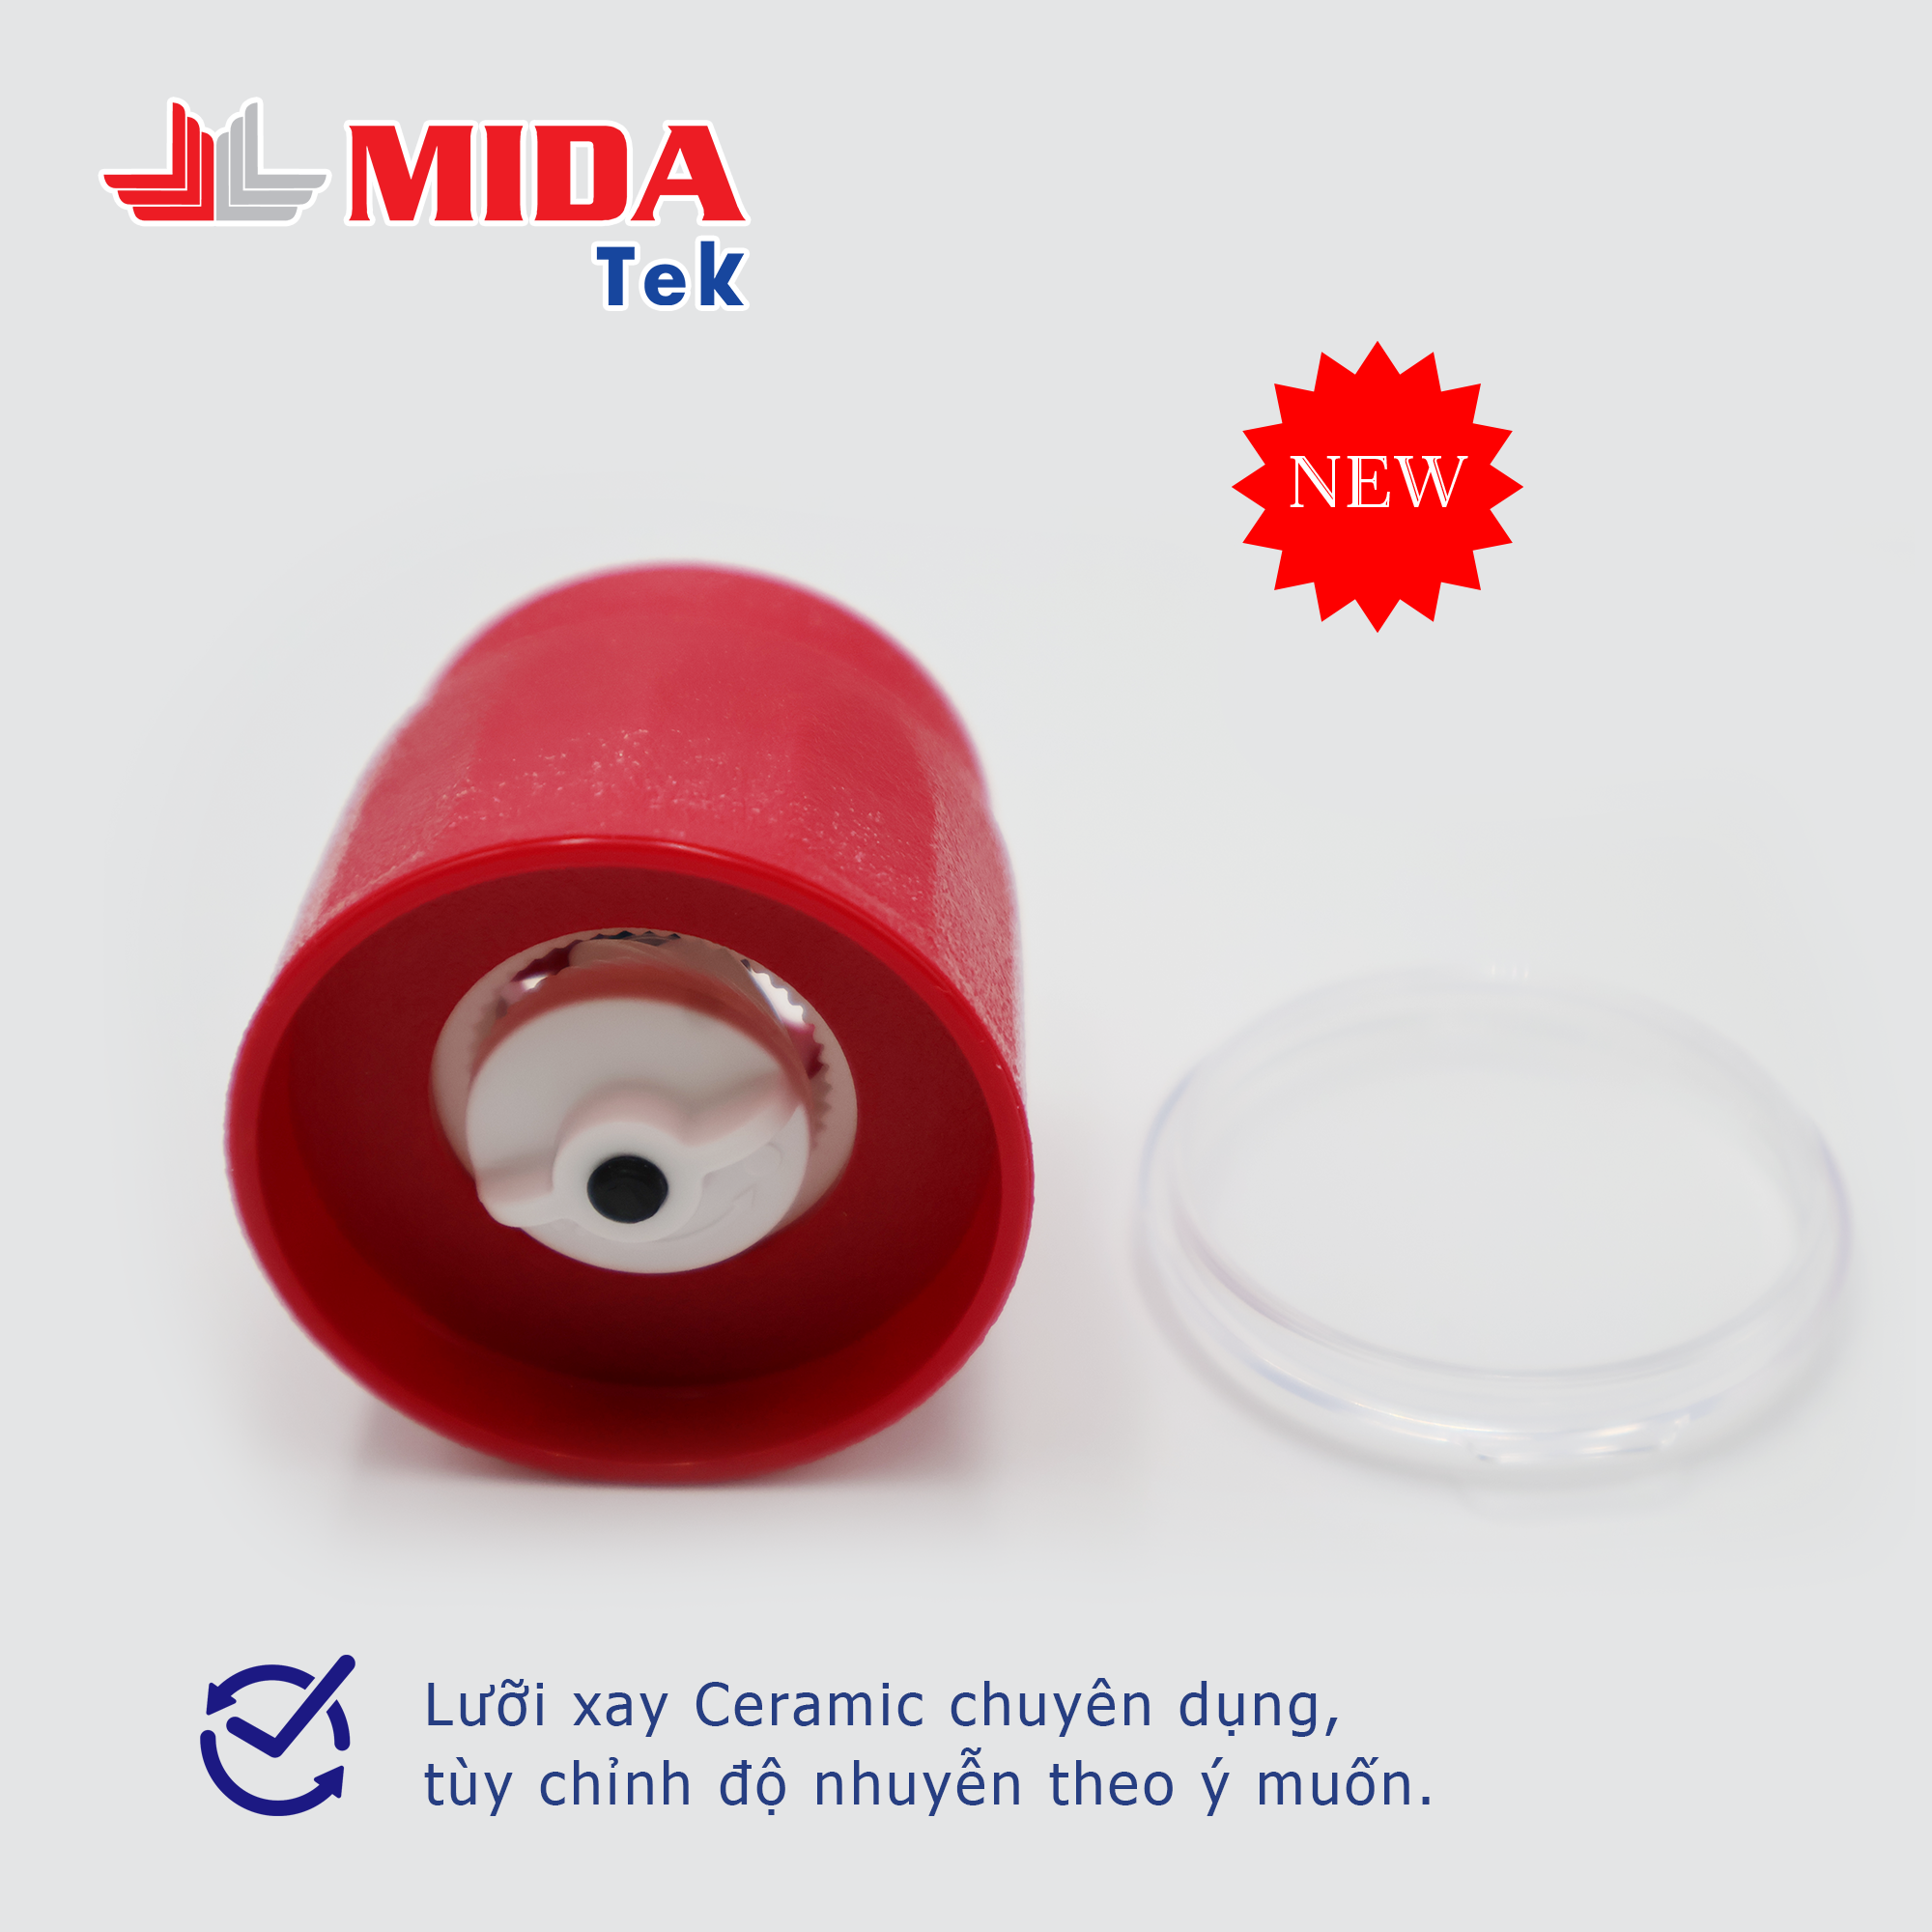 Bộ 2 Nắp xay tiêu MIDATEK cối xay ceramic Màu Đỏ cho hũ nhựa đường kính 45mm